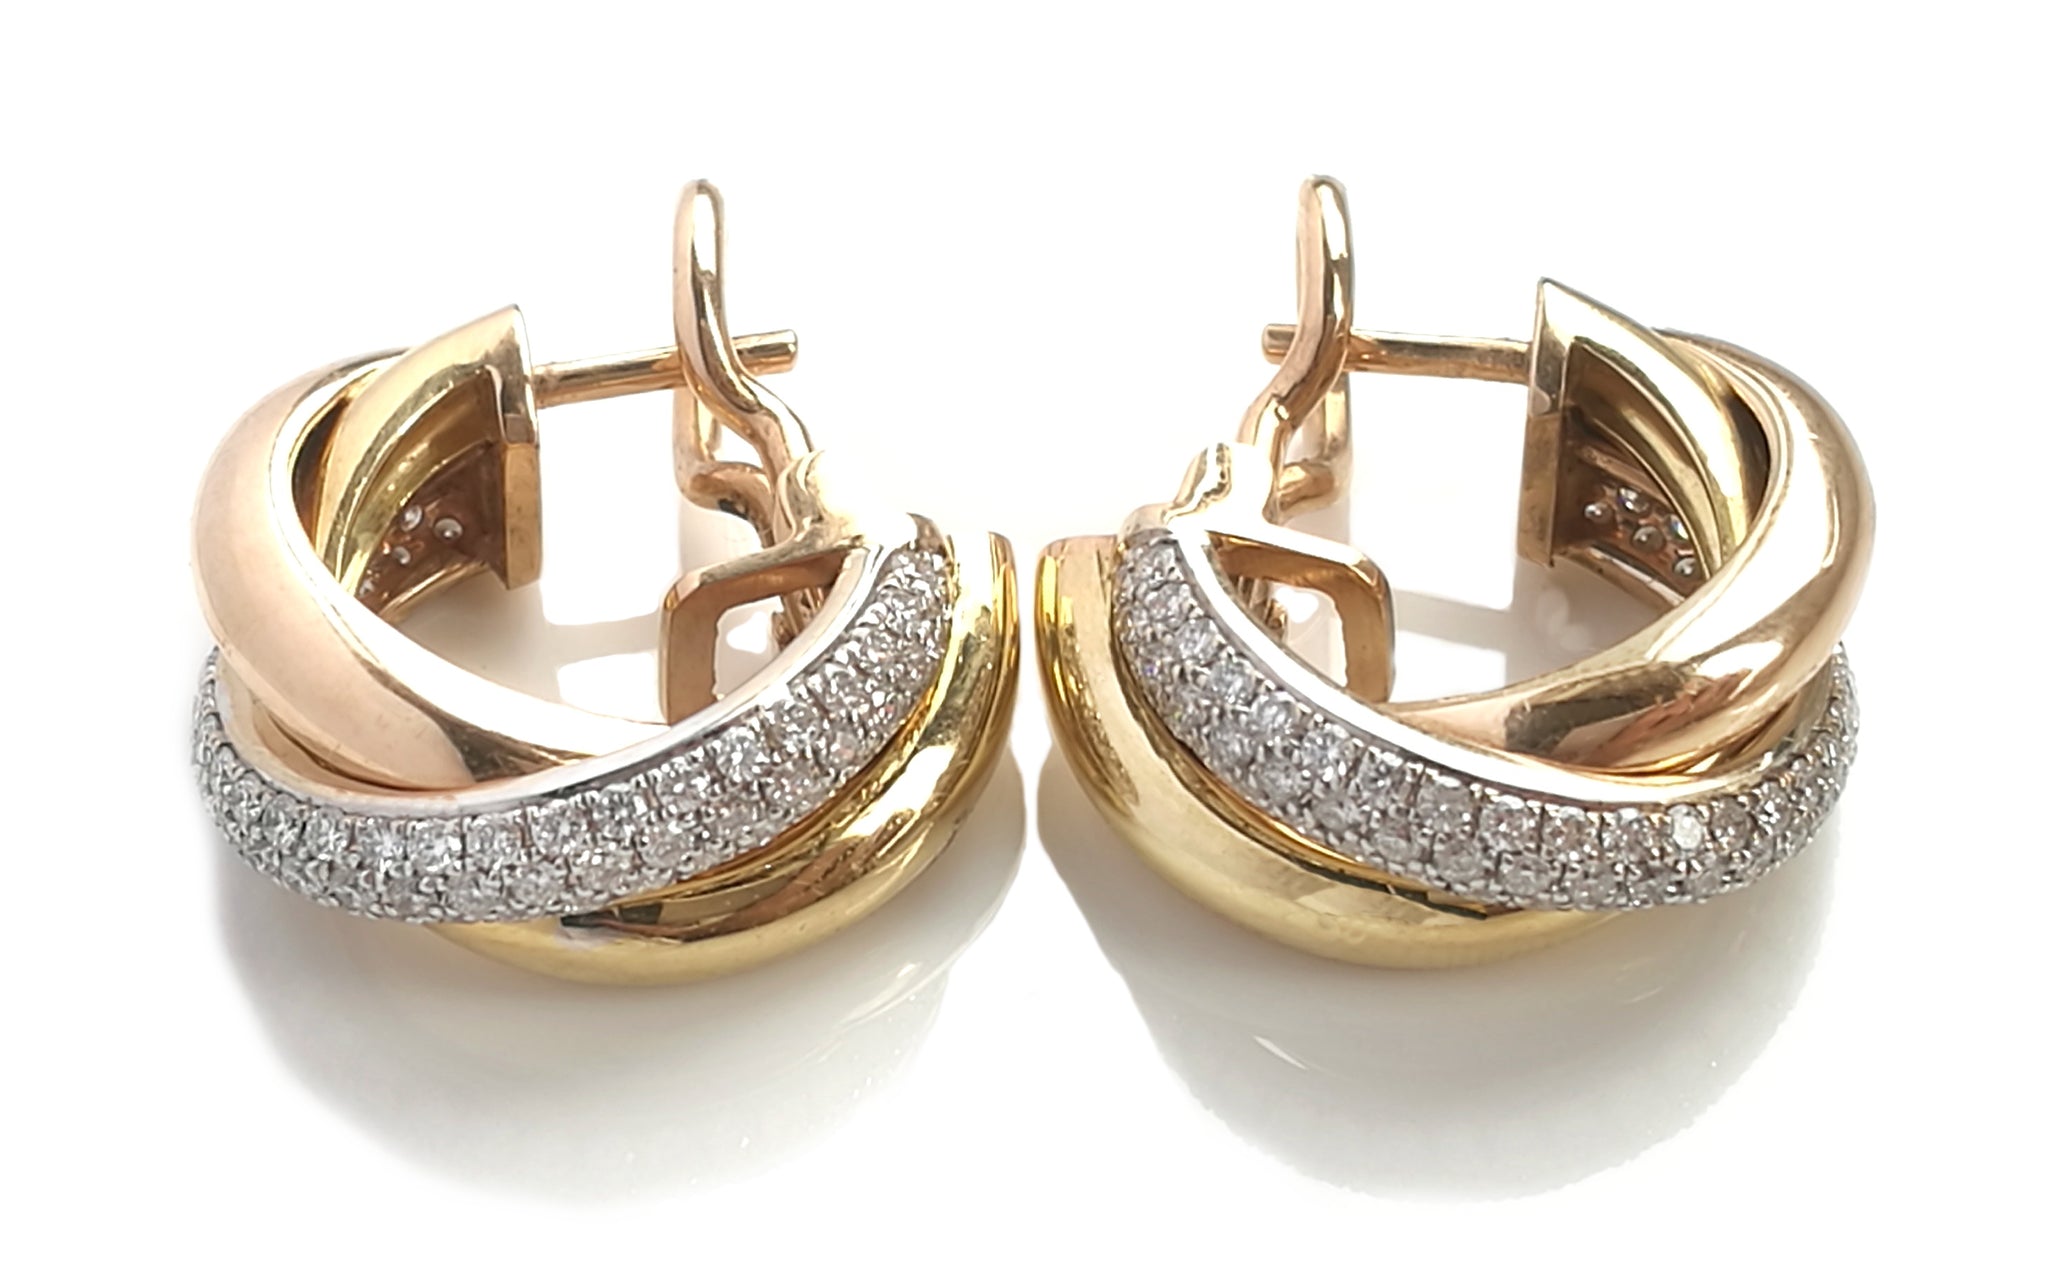 cartier 3 gold earrings